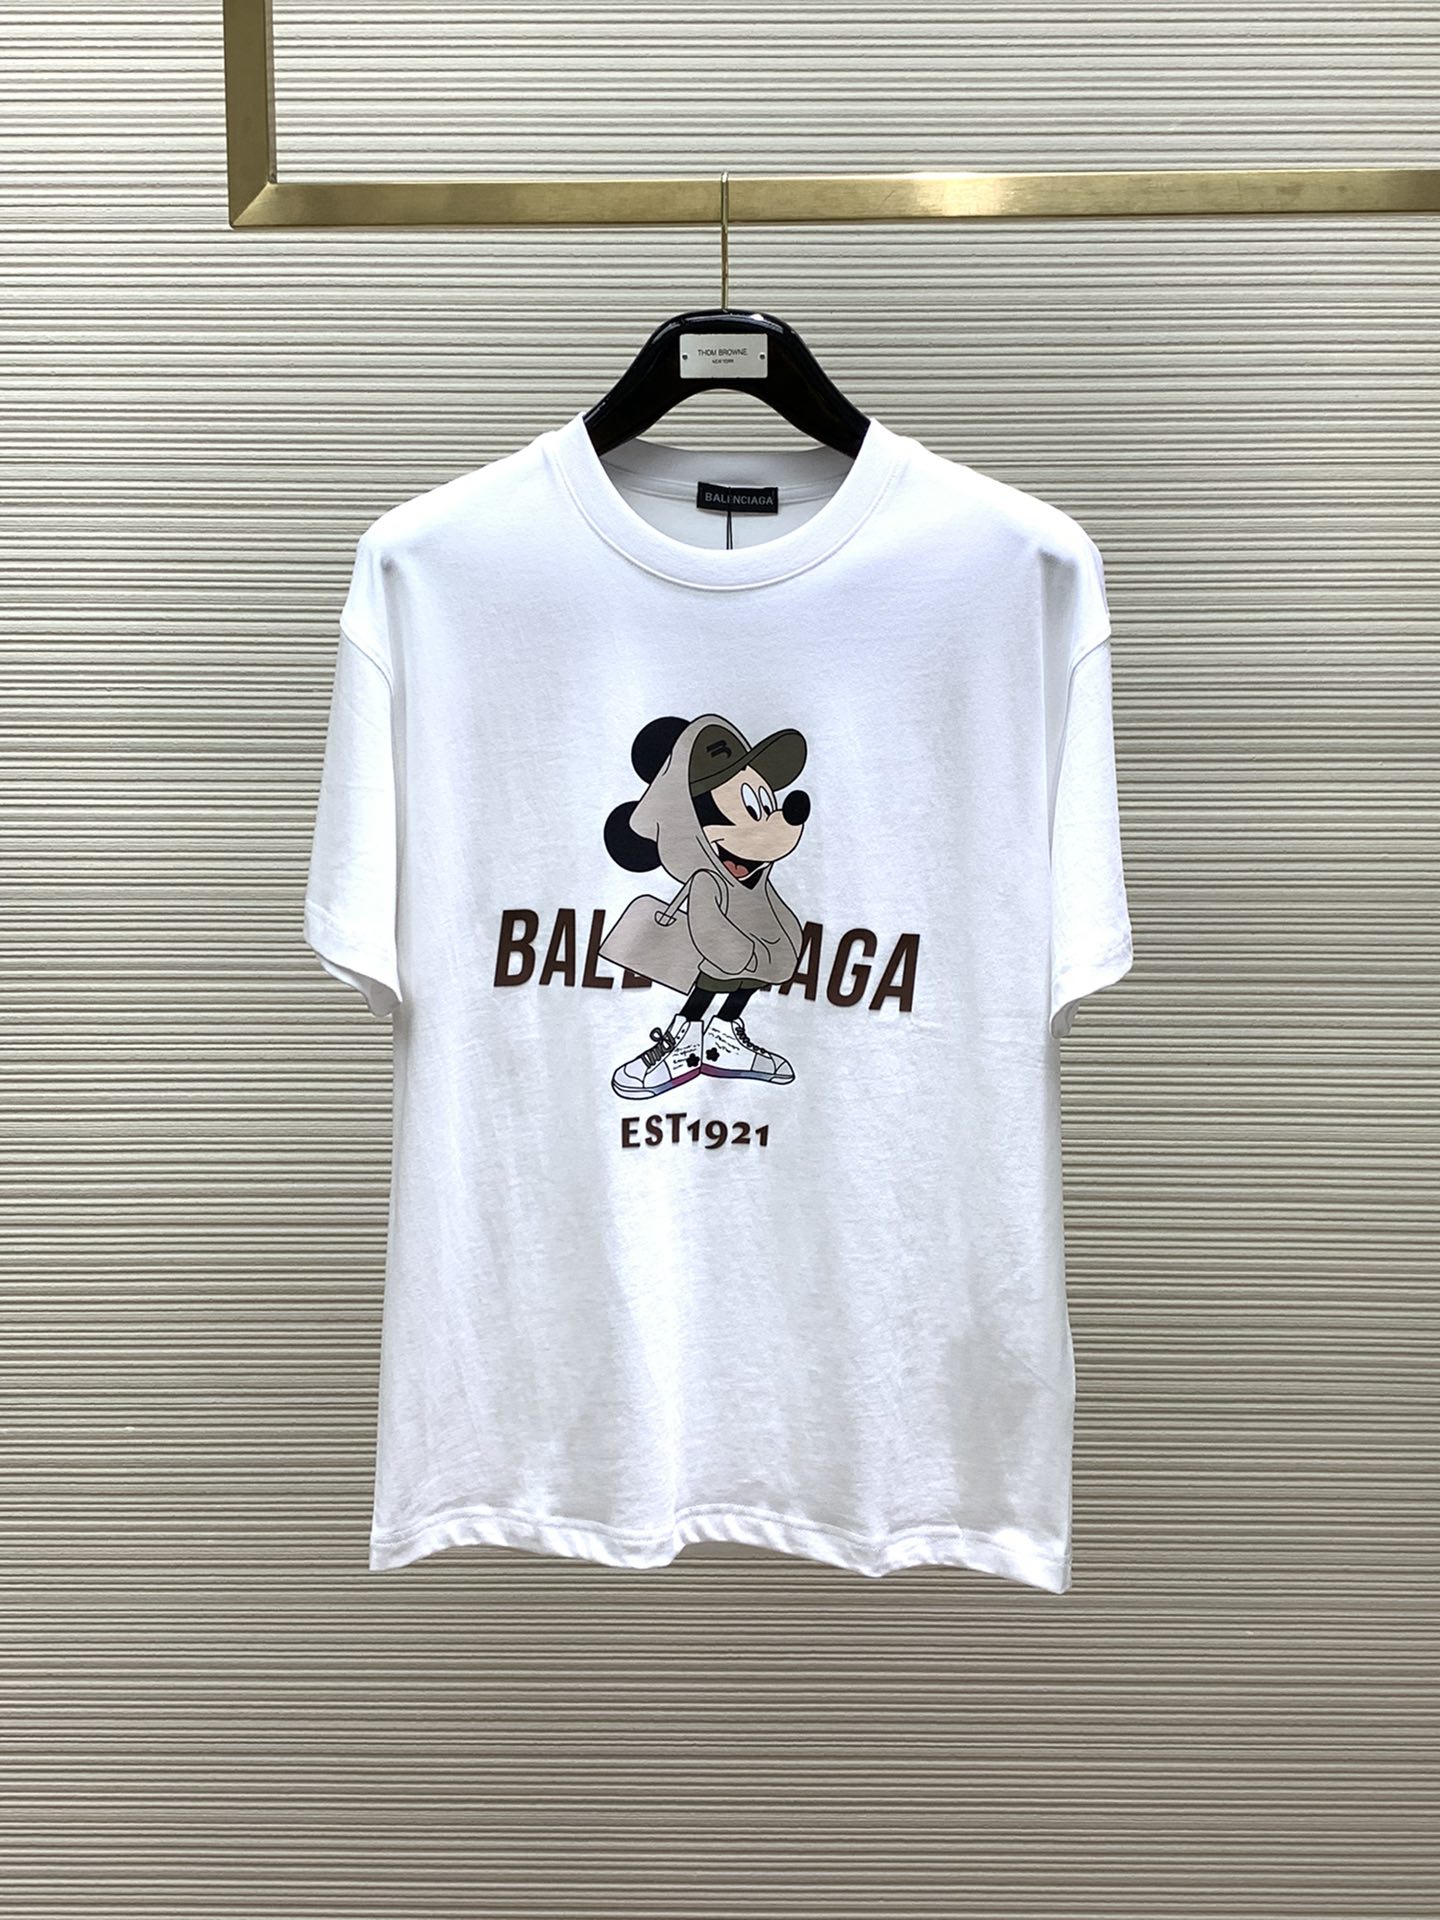 Balenciaga Clothing T-Shirt Printing Summer Collection Fashion Short Sleeve